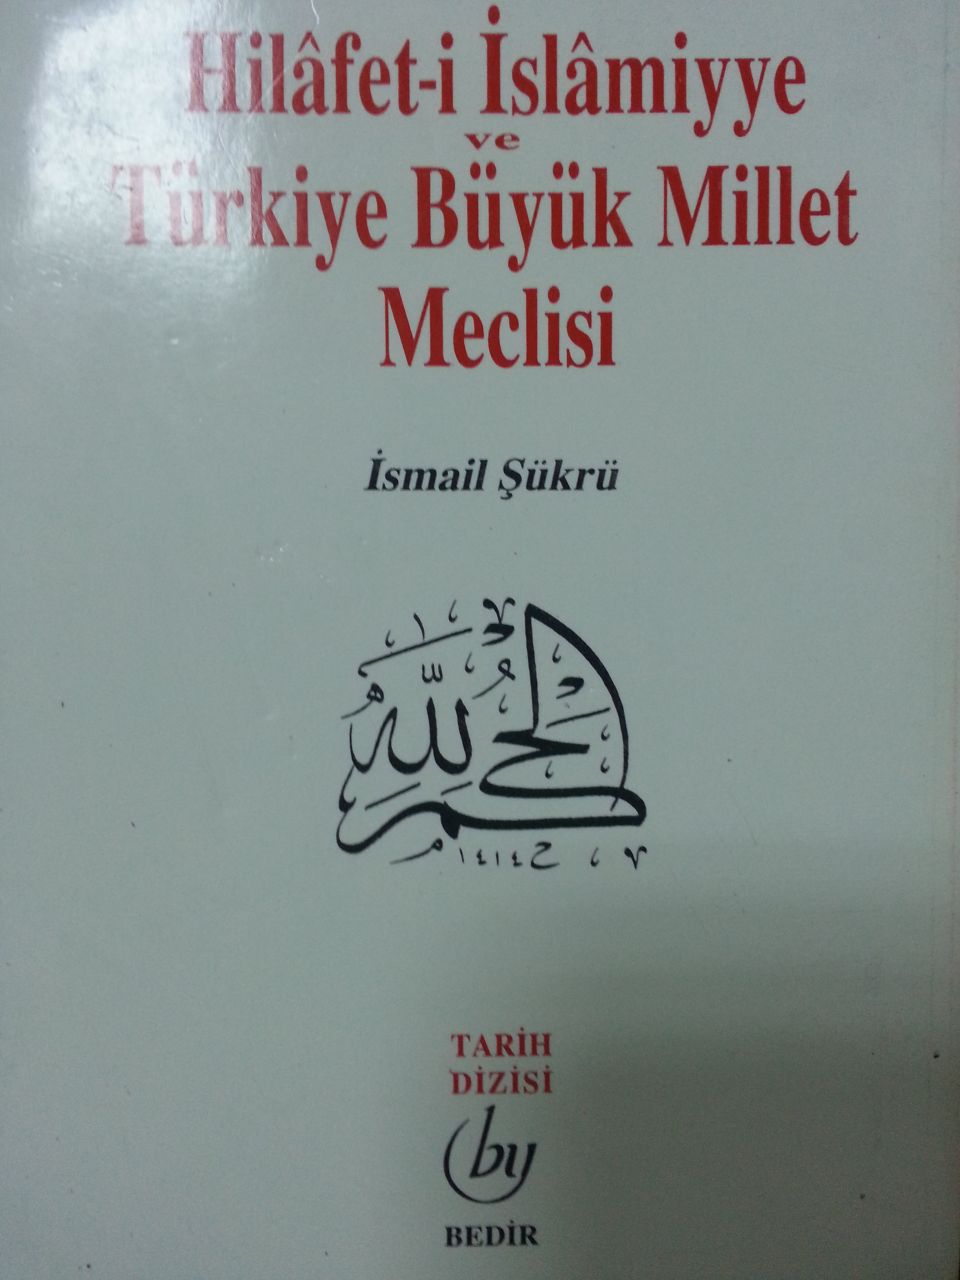 Hilafet-i İslamiyye ve Türkiye Büyük Millet Meclisi